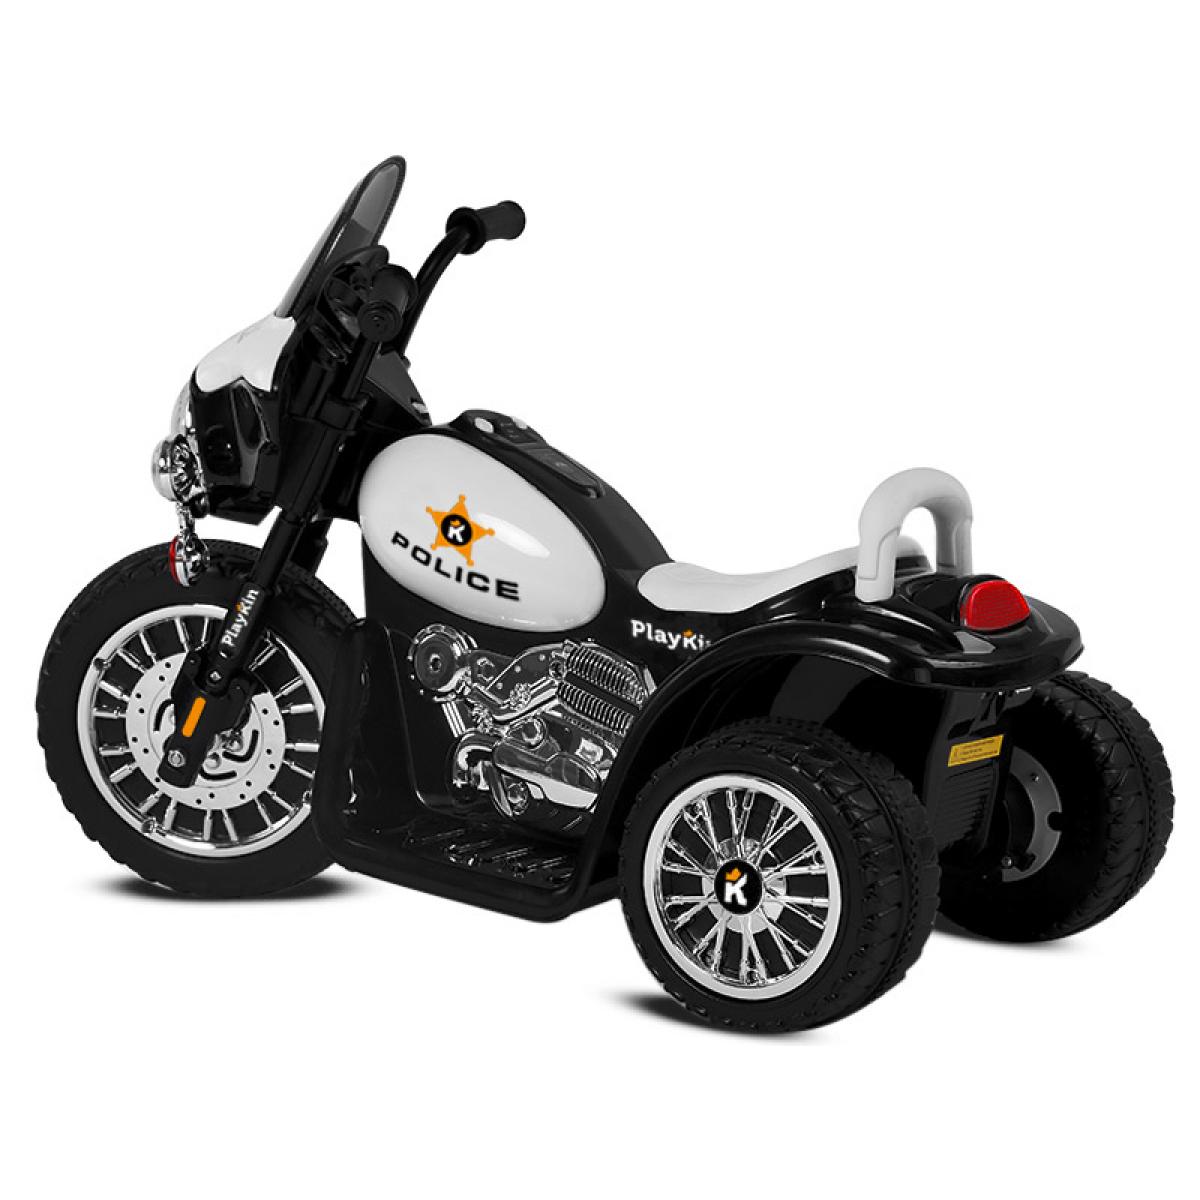 Motocicleta Electrica 6V Moto Policia Para Niños De 2 3 Años Con